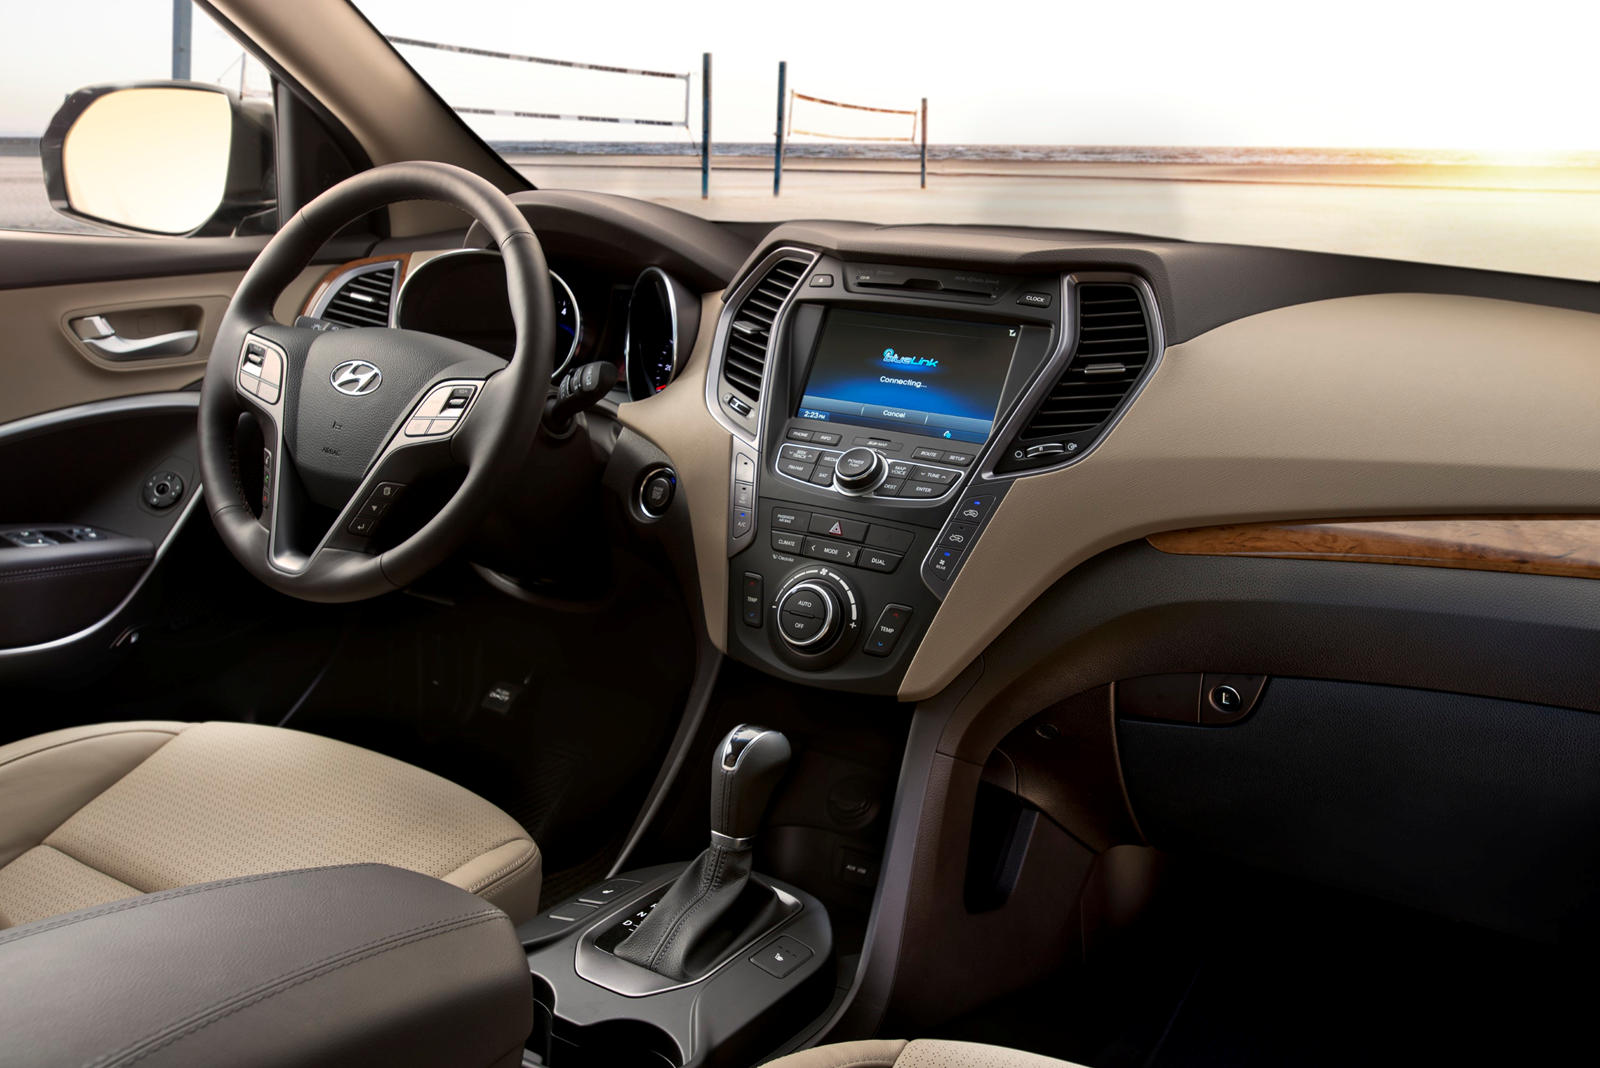 2014 Hyundai Santa Fe Interior Photos | CarBuzz